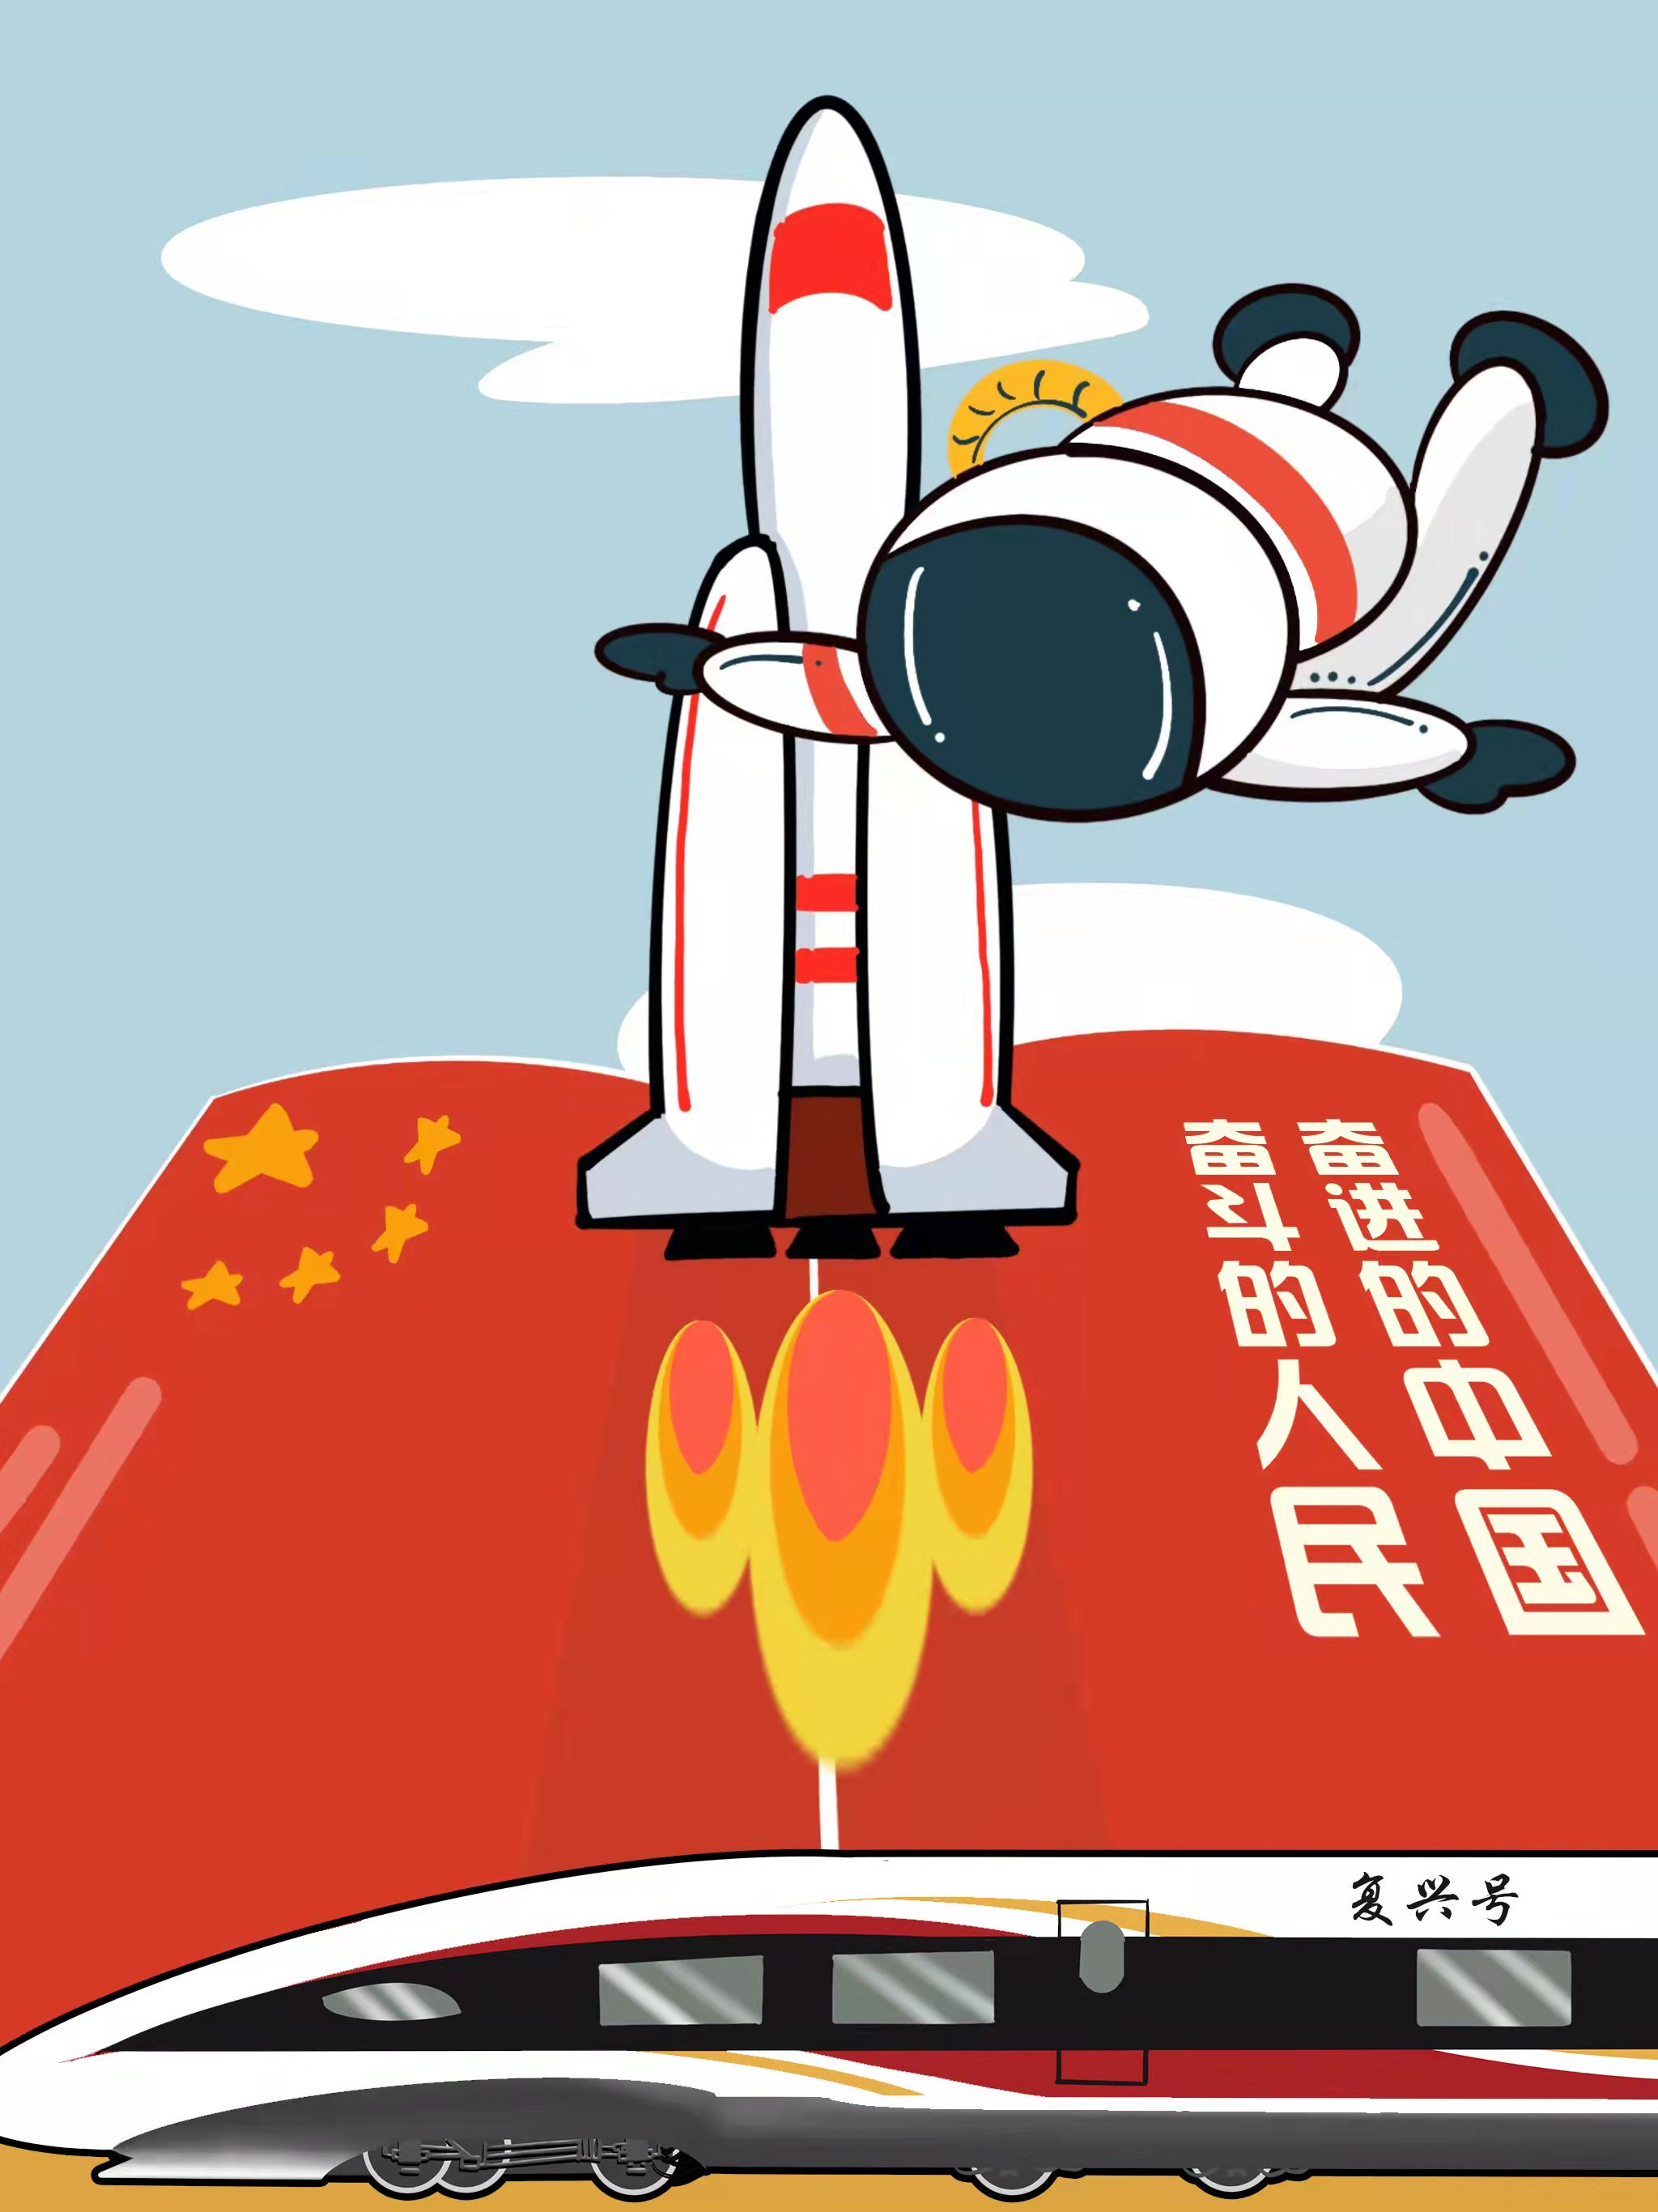 漫画作者:张云涛近日,以奋斗的人民,奋进的中国为主题的中国正能量